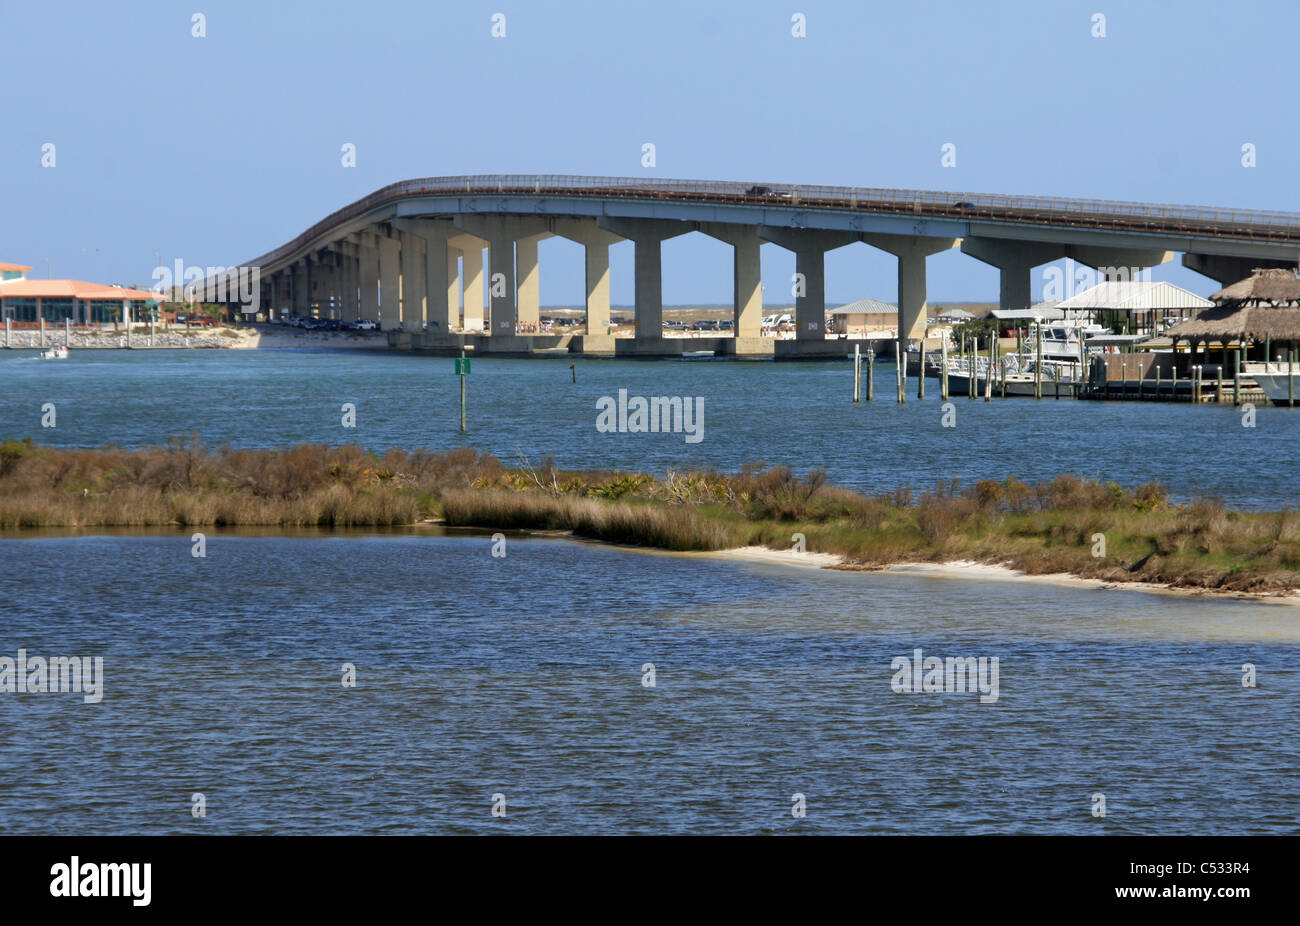 Orange Beach Florida Intercoastal Waterway pont menant à des eaux du golfe du Mexique avec les petits États insulaires et banc Banque D'Images